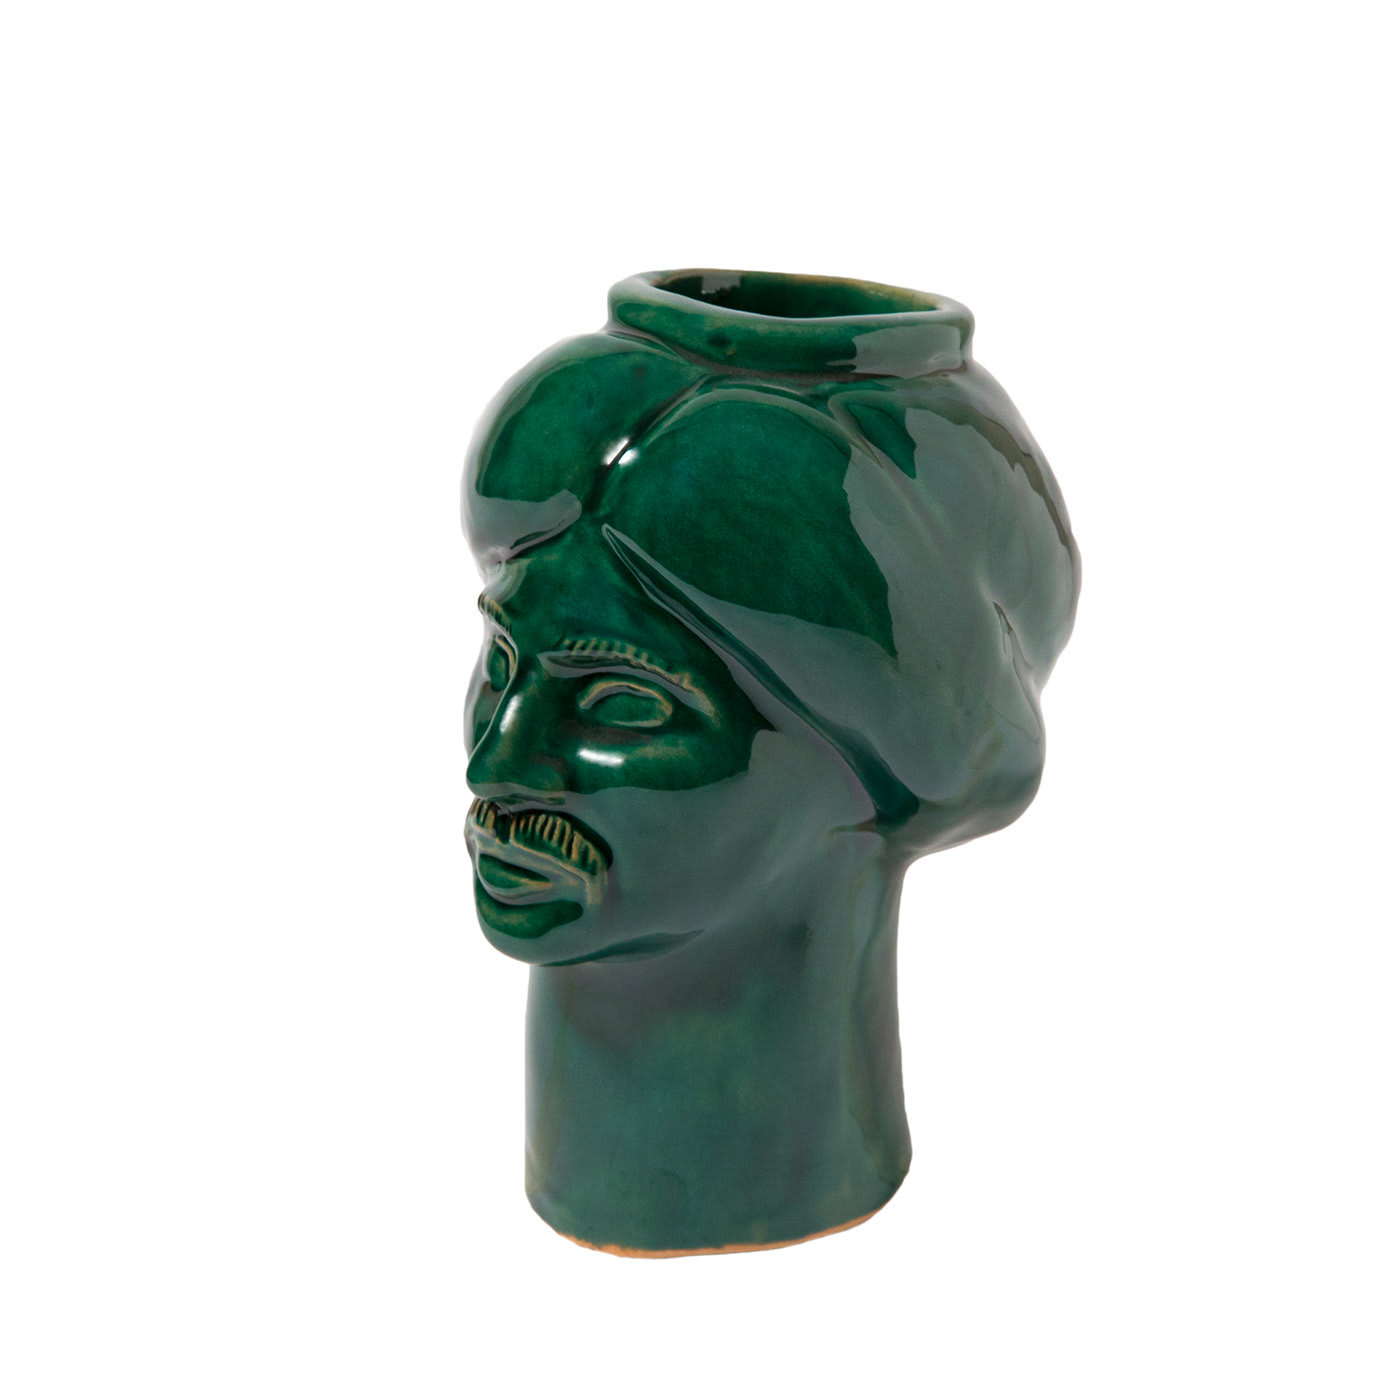 Solimano & Roxelana Dark Green Vases - Crita Ceramiche